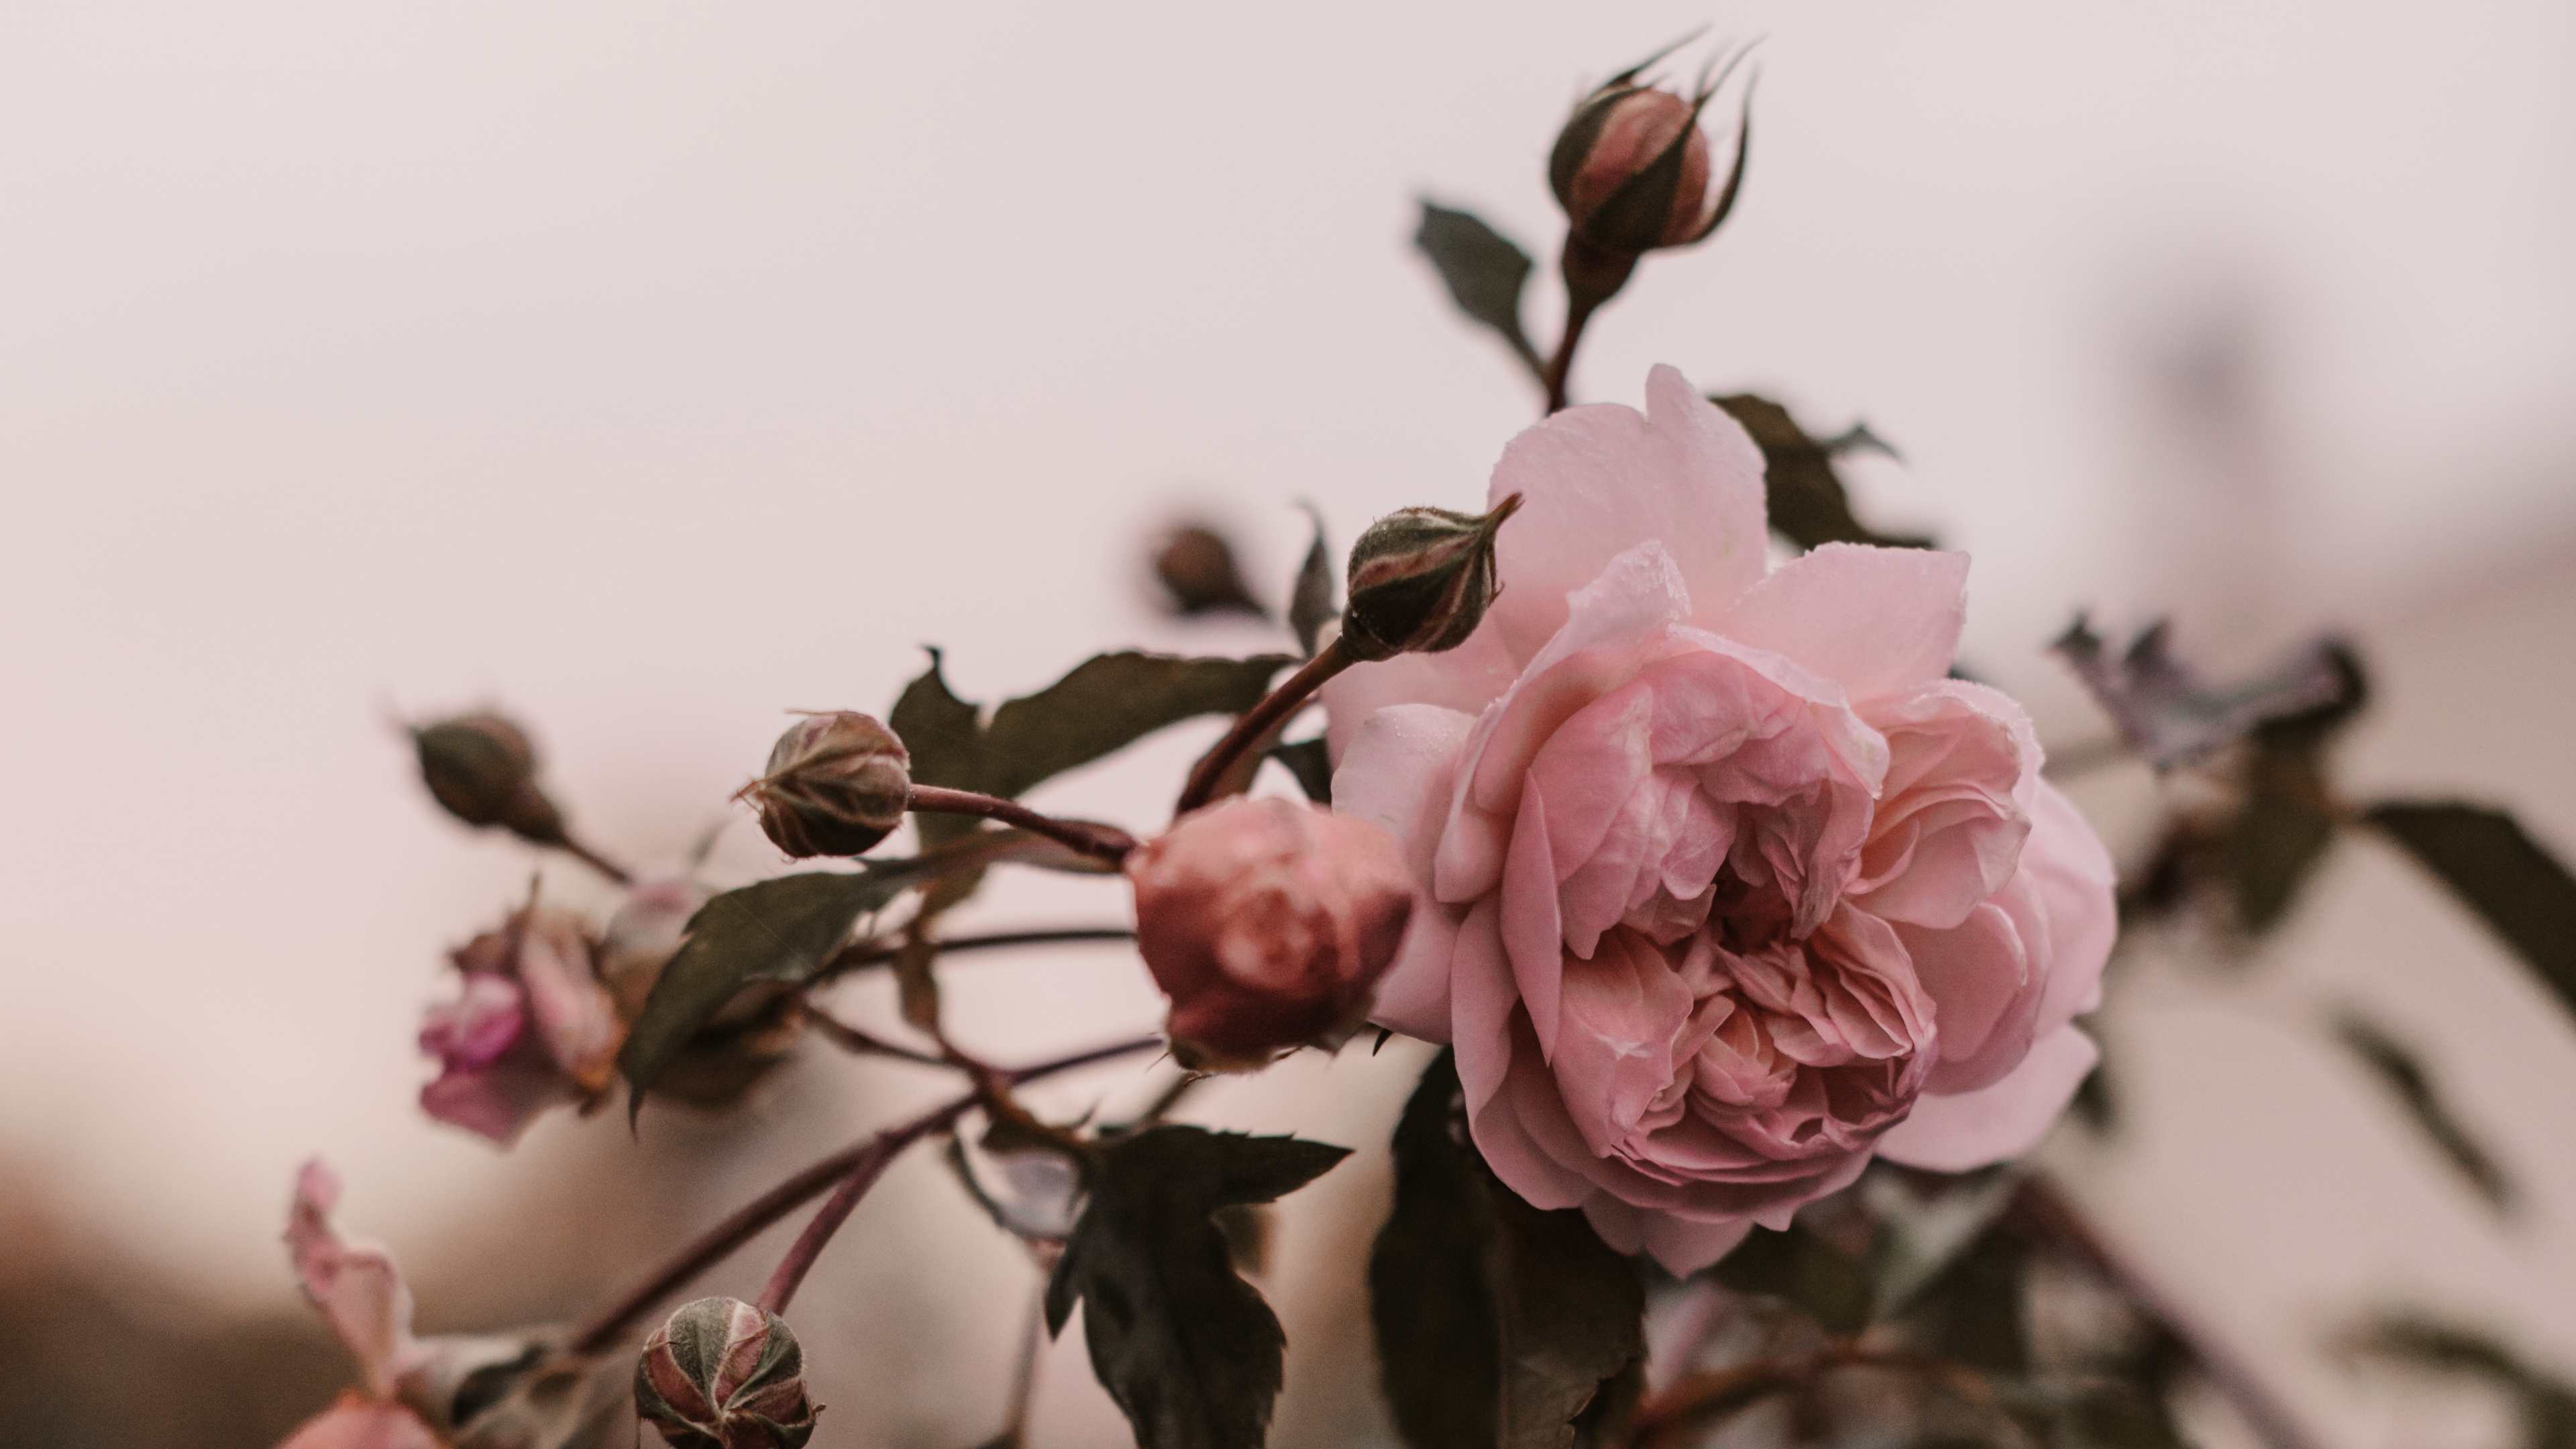 粉红色, 弹簧, 玫瑰花园, 显花植物, 玫瑰家庭 壁纸 3840x2160 允许